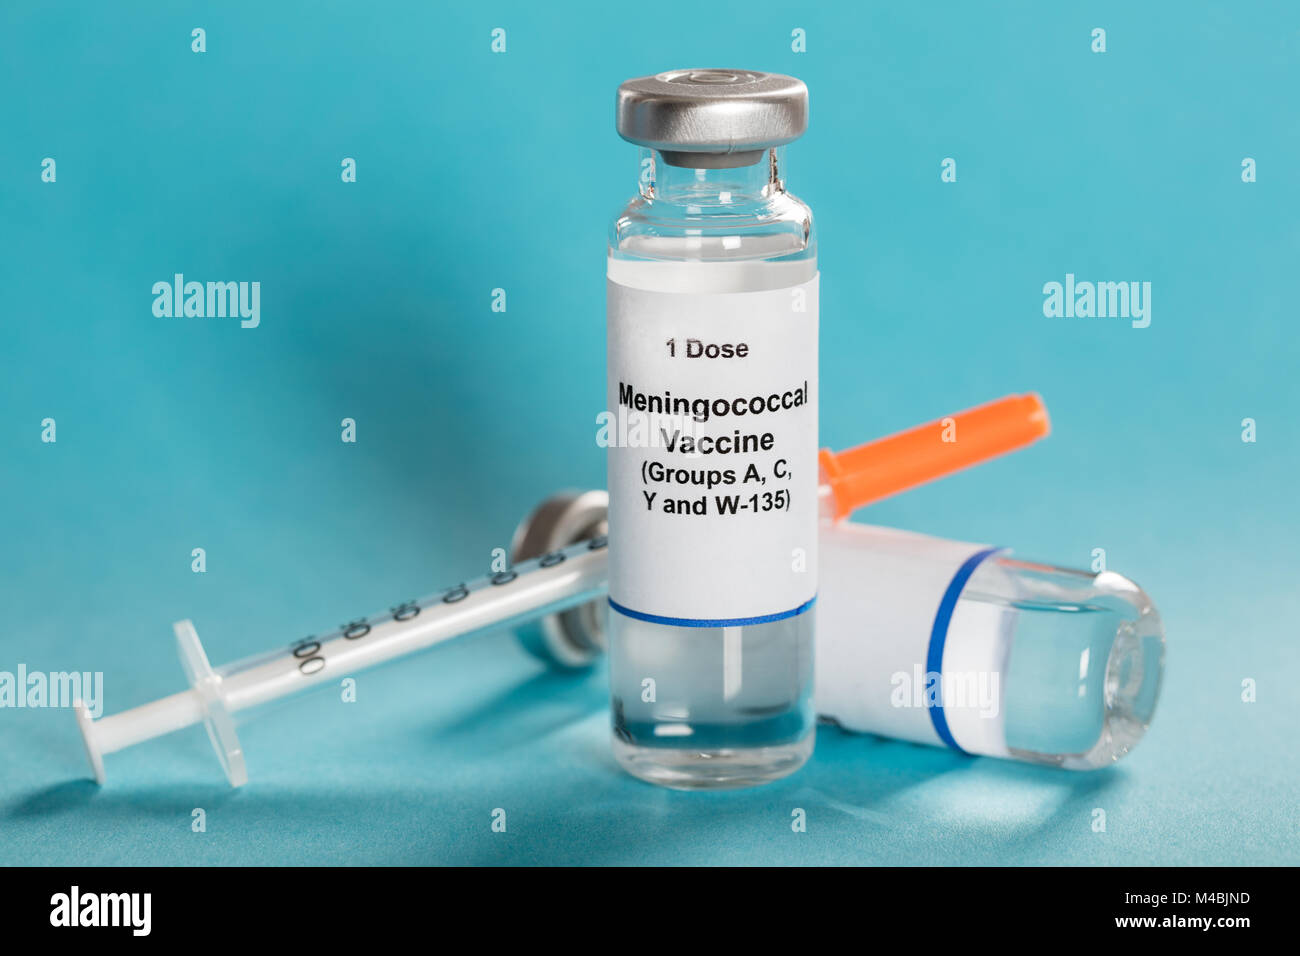 Une dose de vaccin antiméningococcique en flacon avec seringue sur fond bleu turquoise Banque D'Images